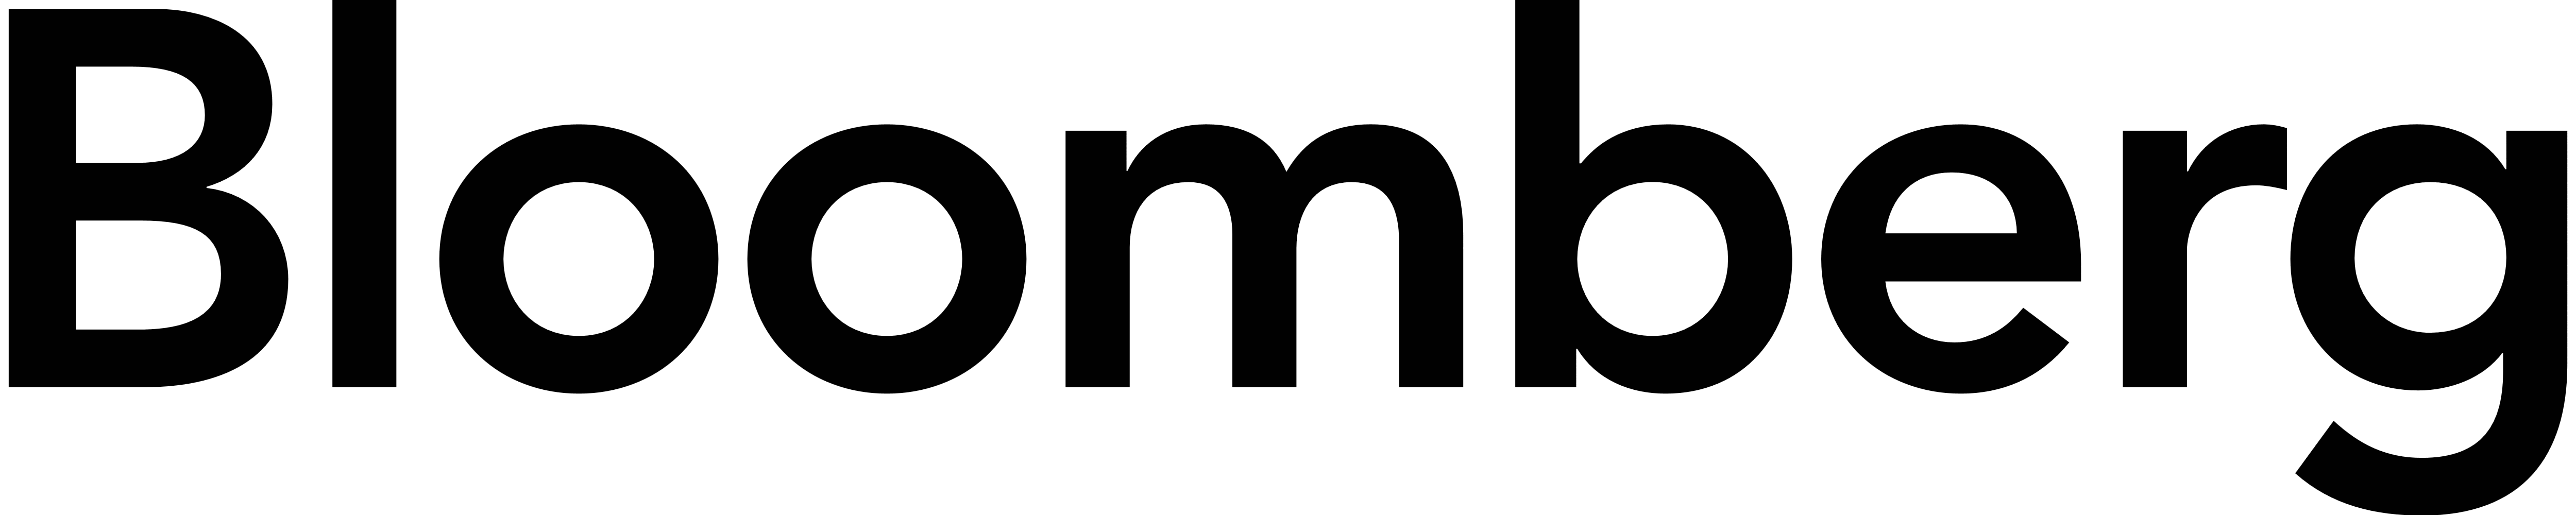 Bloomberg logomark